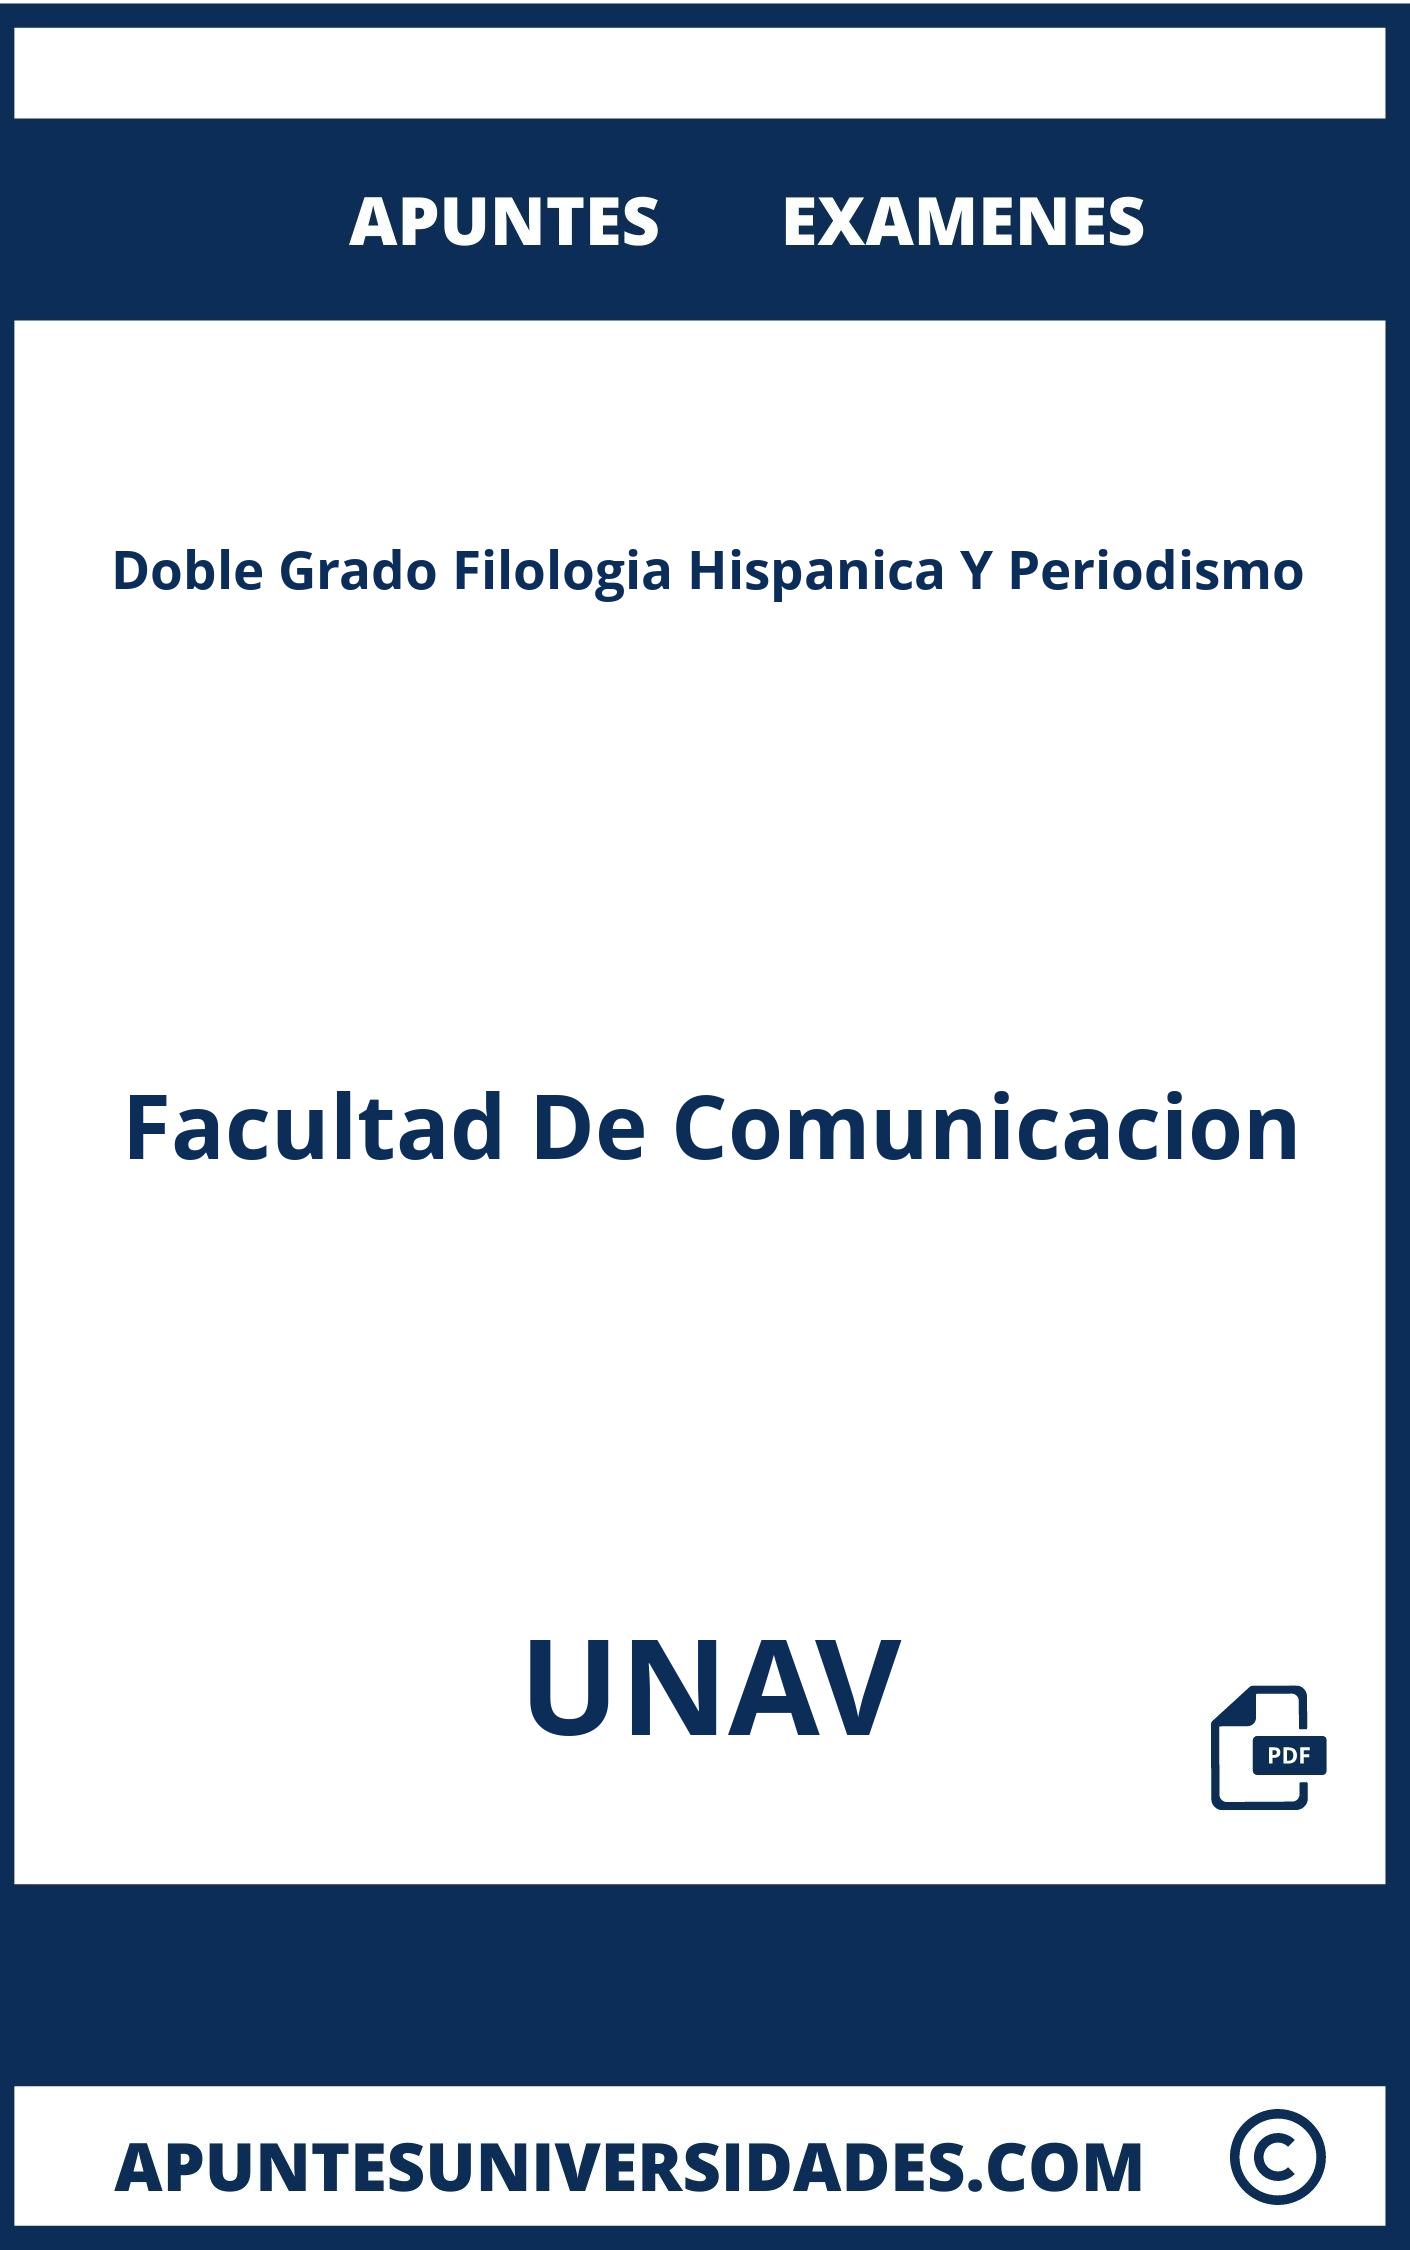 Examenes y Apuntes de Doble Grado Filologia Hispanica Y Periodismo UNAV